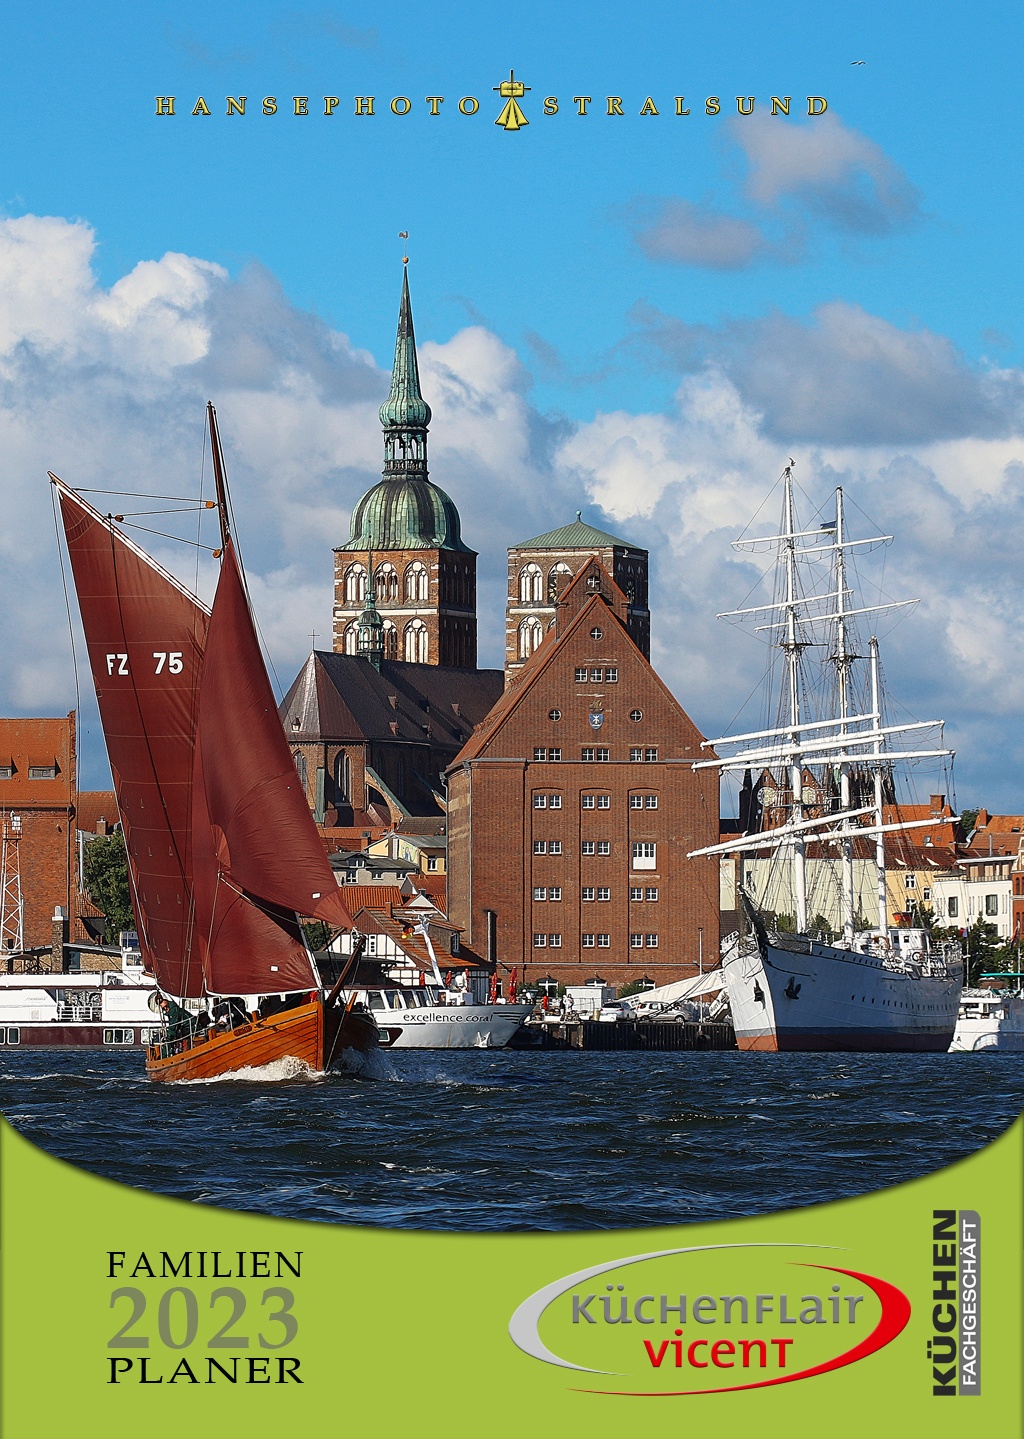 Die Hafeneinfahrt von Stralsund